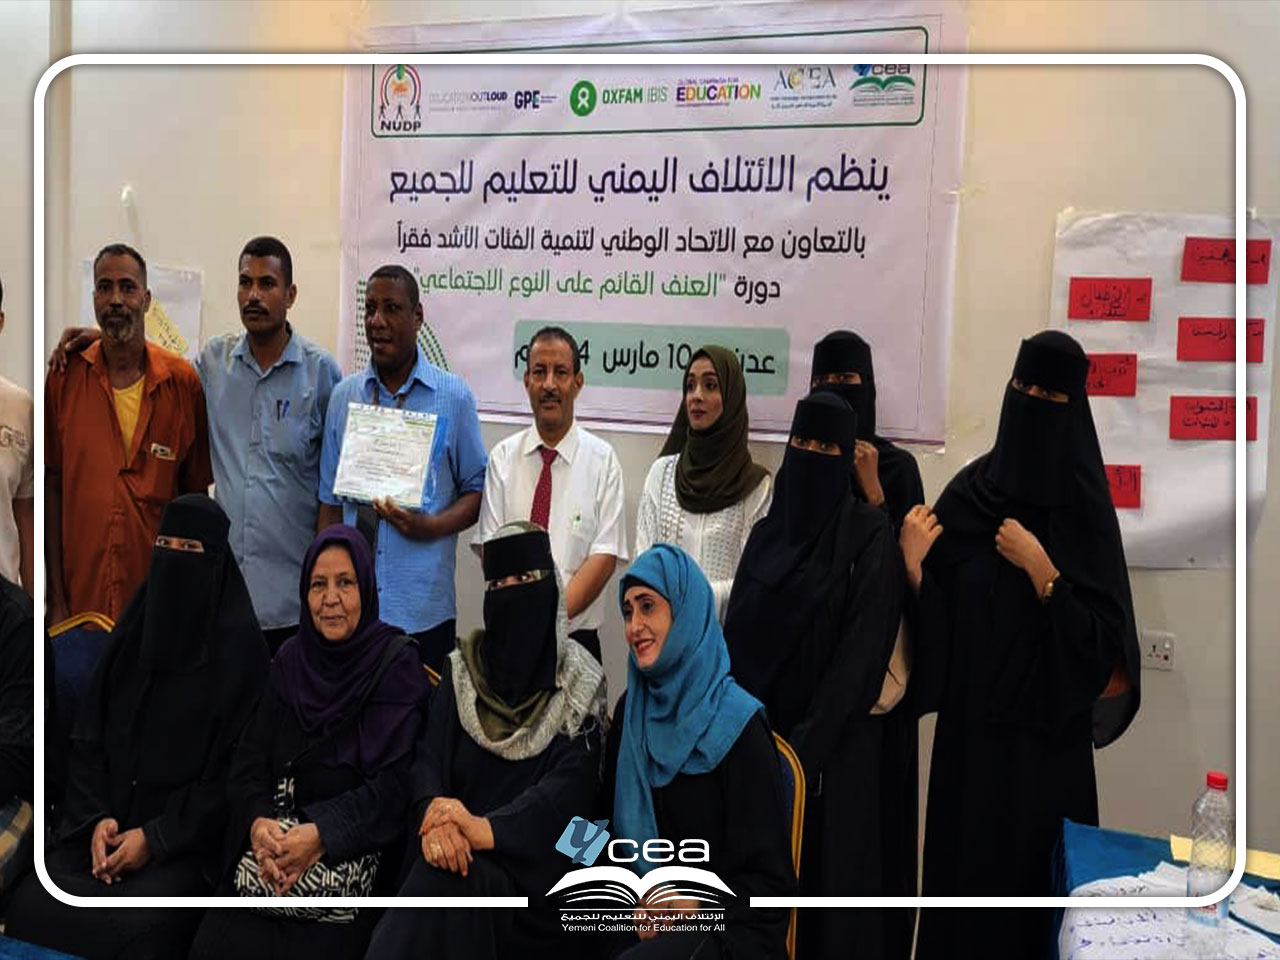 اختتم الائتلاف اليمني للتعليم للجميع الدورات التدريبية